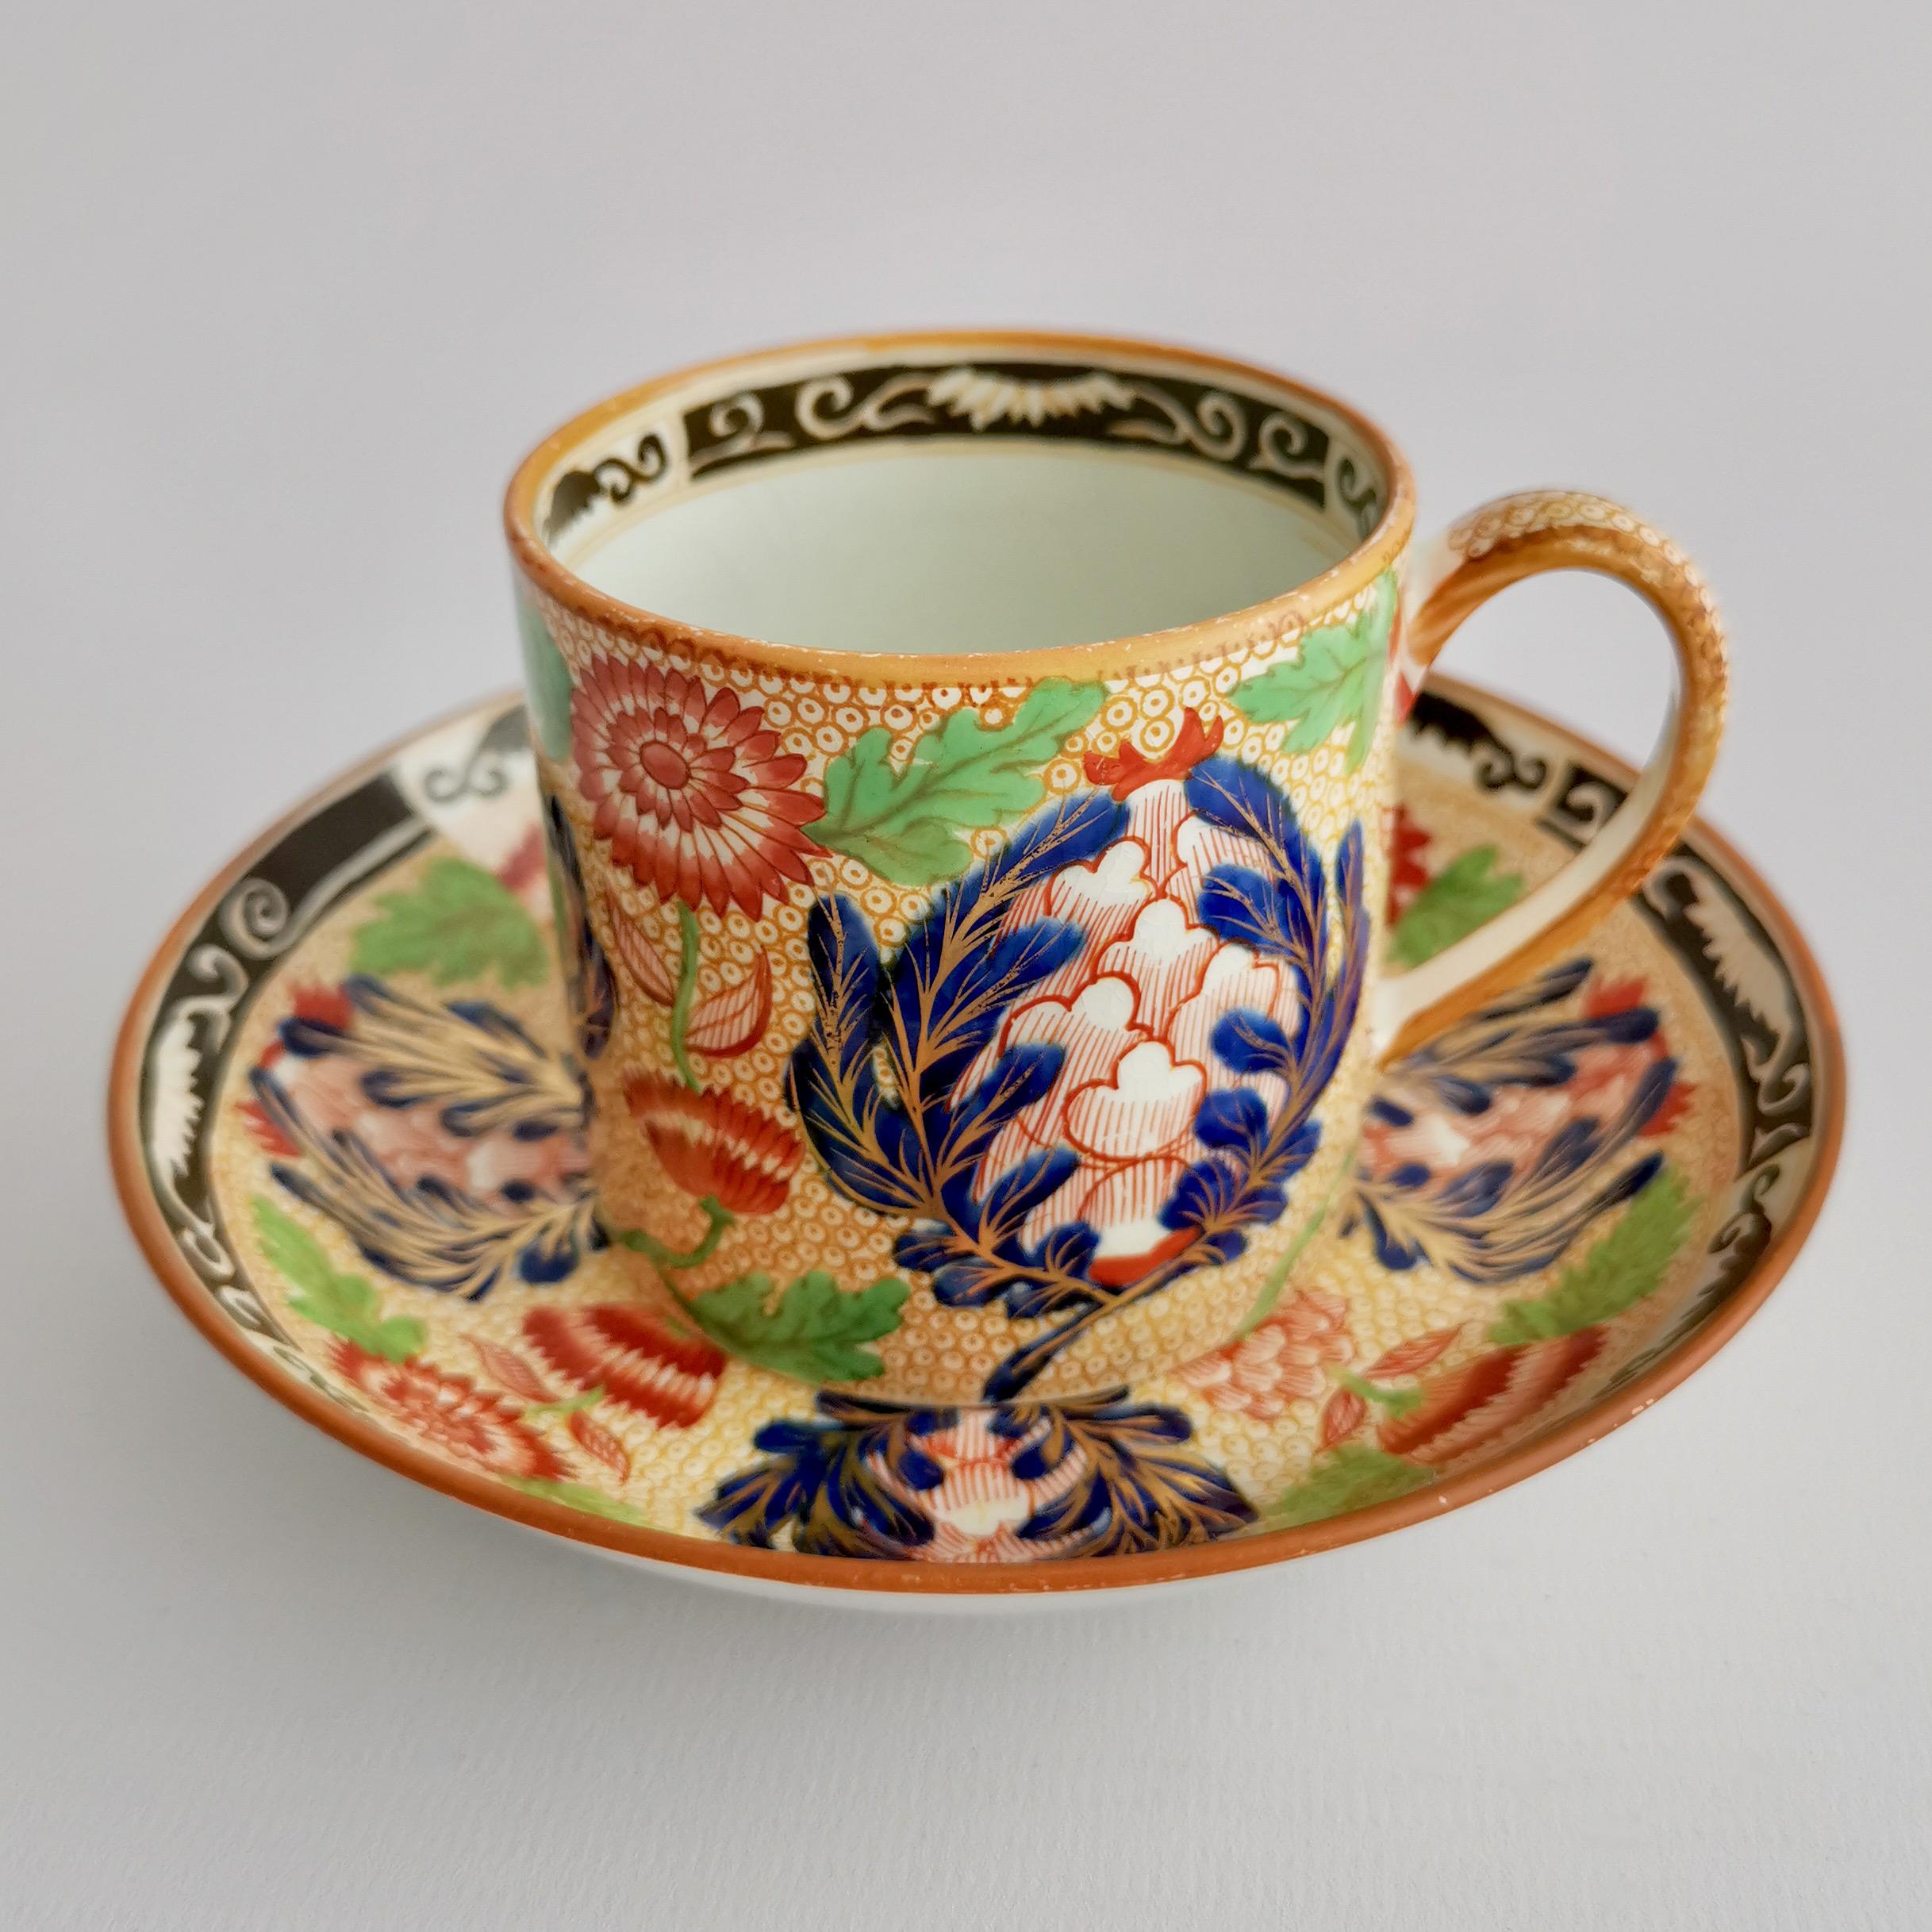 Chinoiserie Wedgwood Creamware Teacup Trio, Chrysanthemum Pattern, Regency, ca 1815